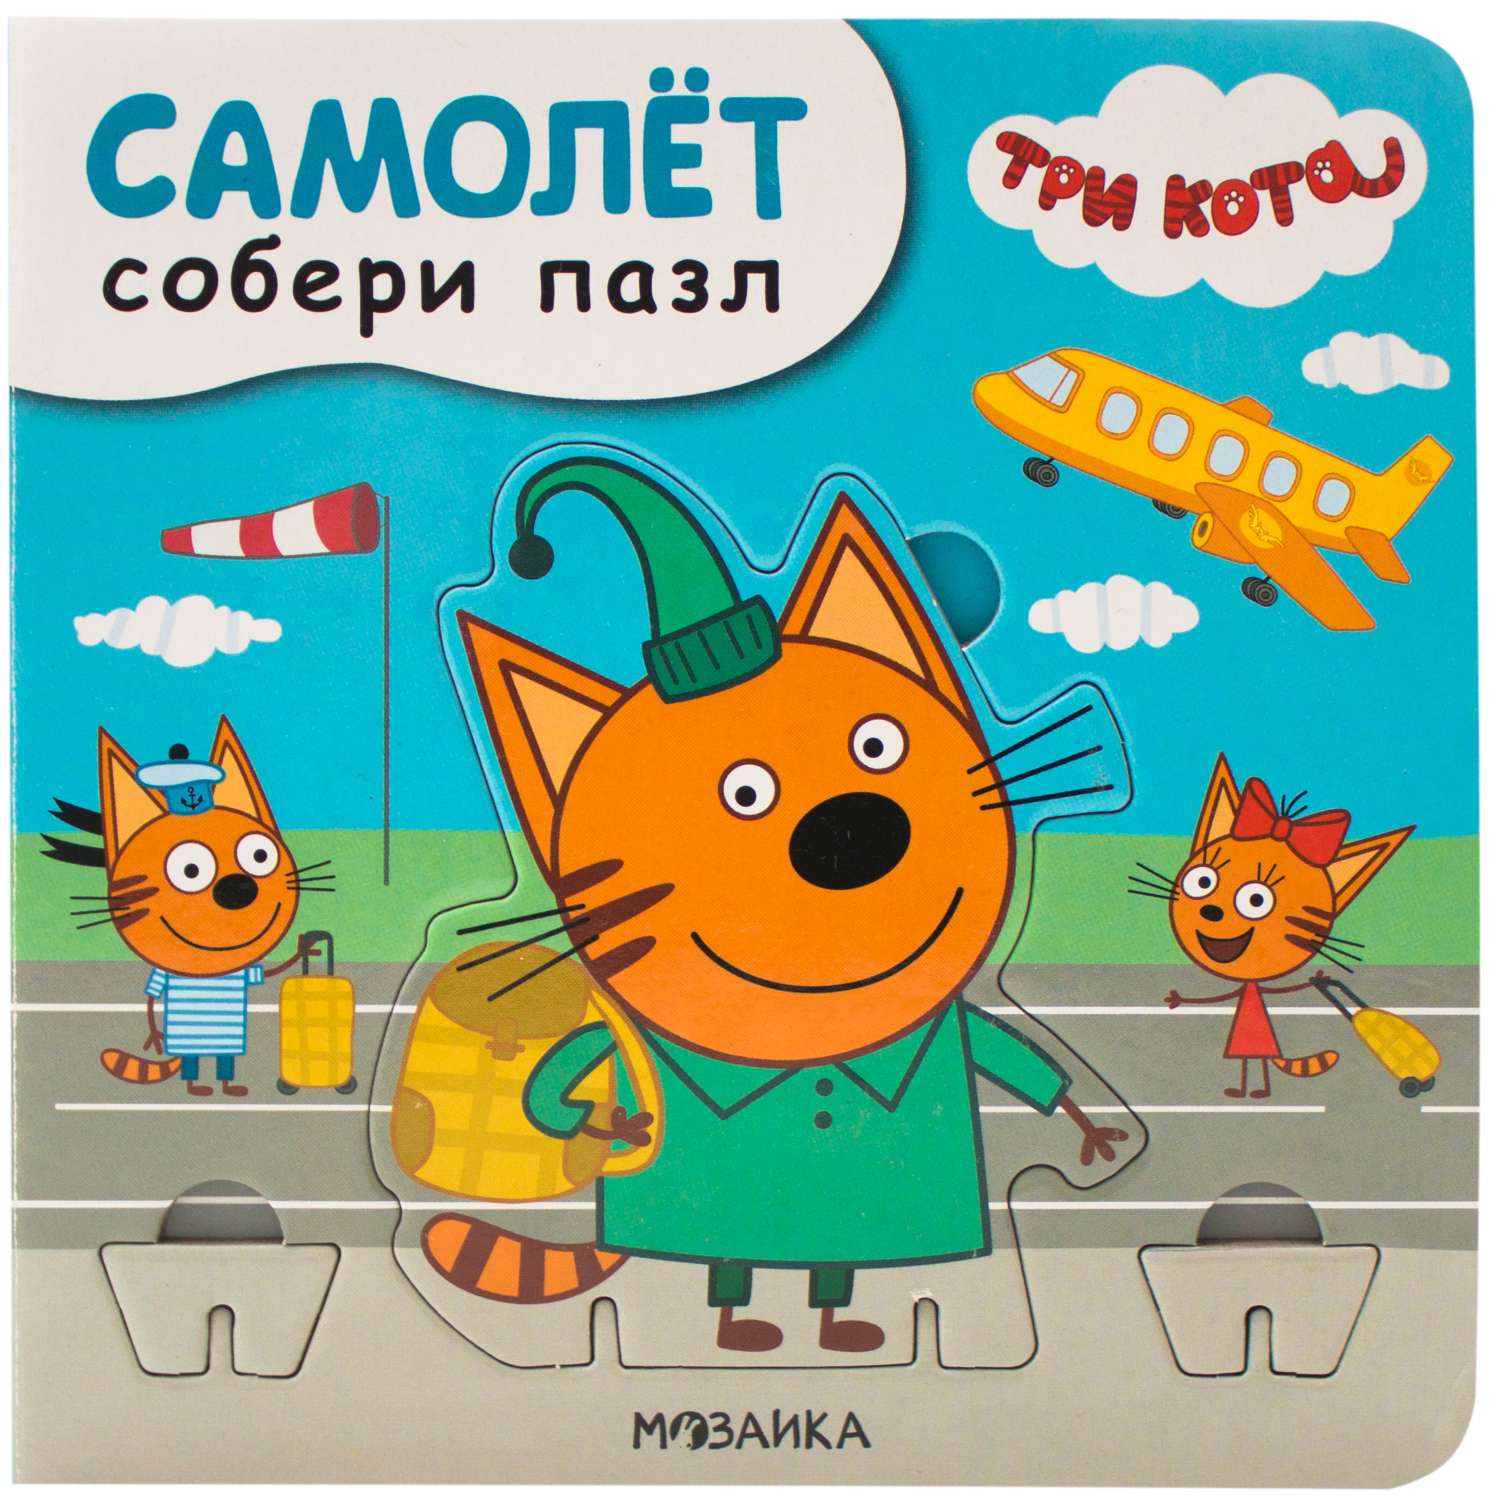 Книга МОЗАИКА kids Три кота Собери пазл Самолет - фото 1